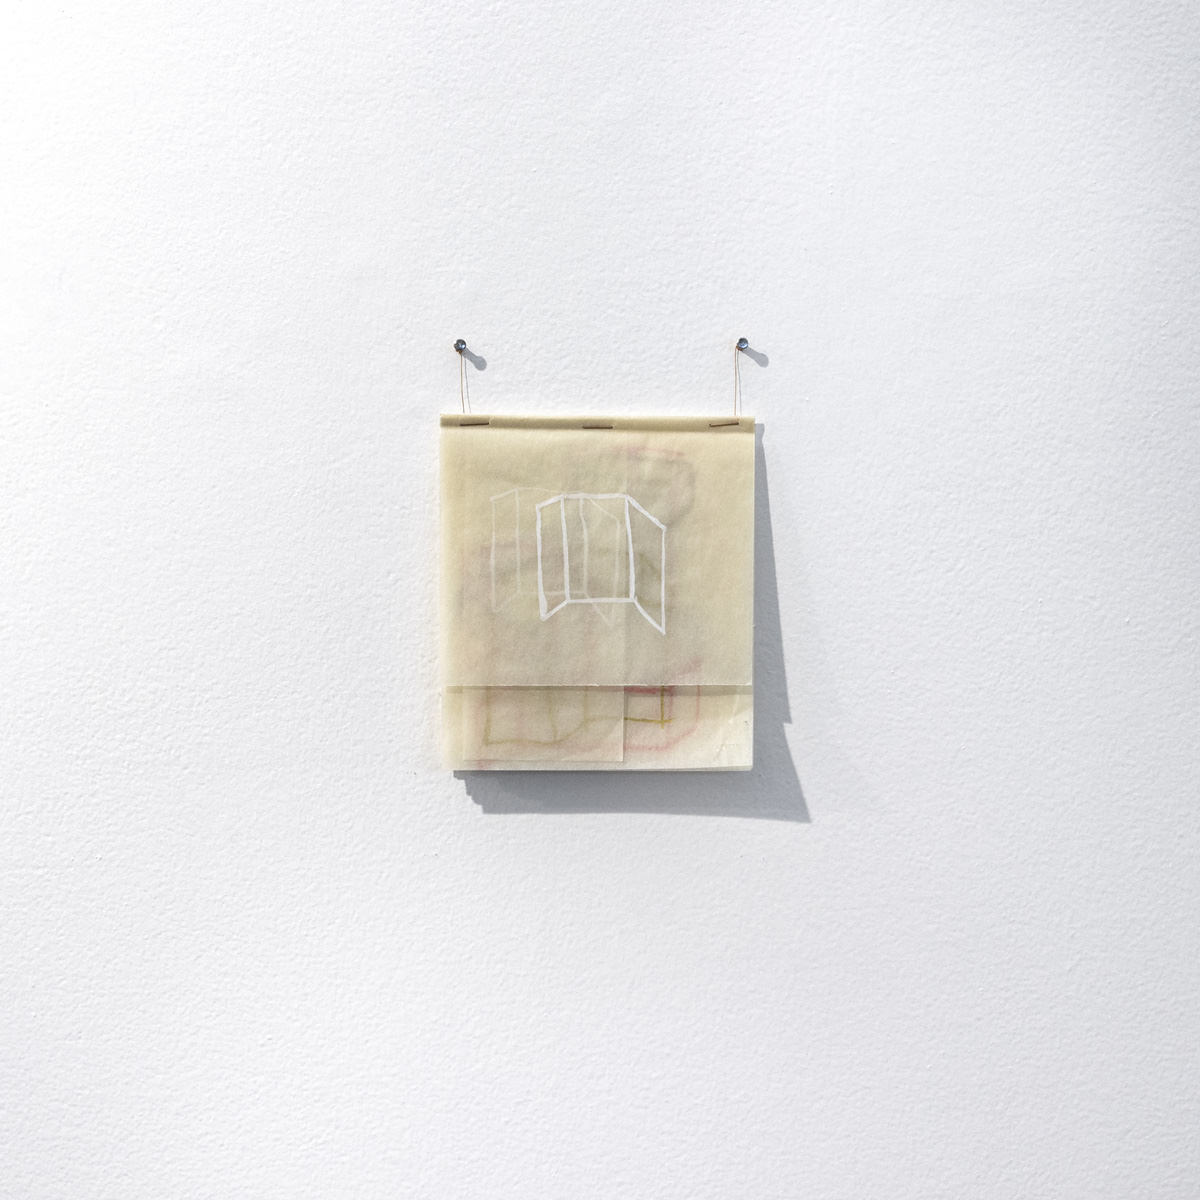 Flávia Ribeiro, Disegno, 2019 - guazzo e polvere di bronzo su doppio foglio di carta da disegno - 28,7 x 21 cm. Foto: Rivelazione.